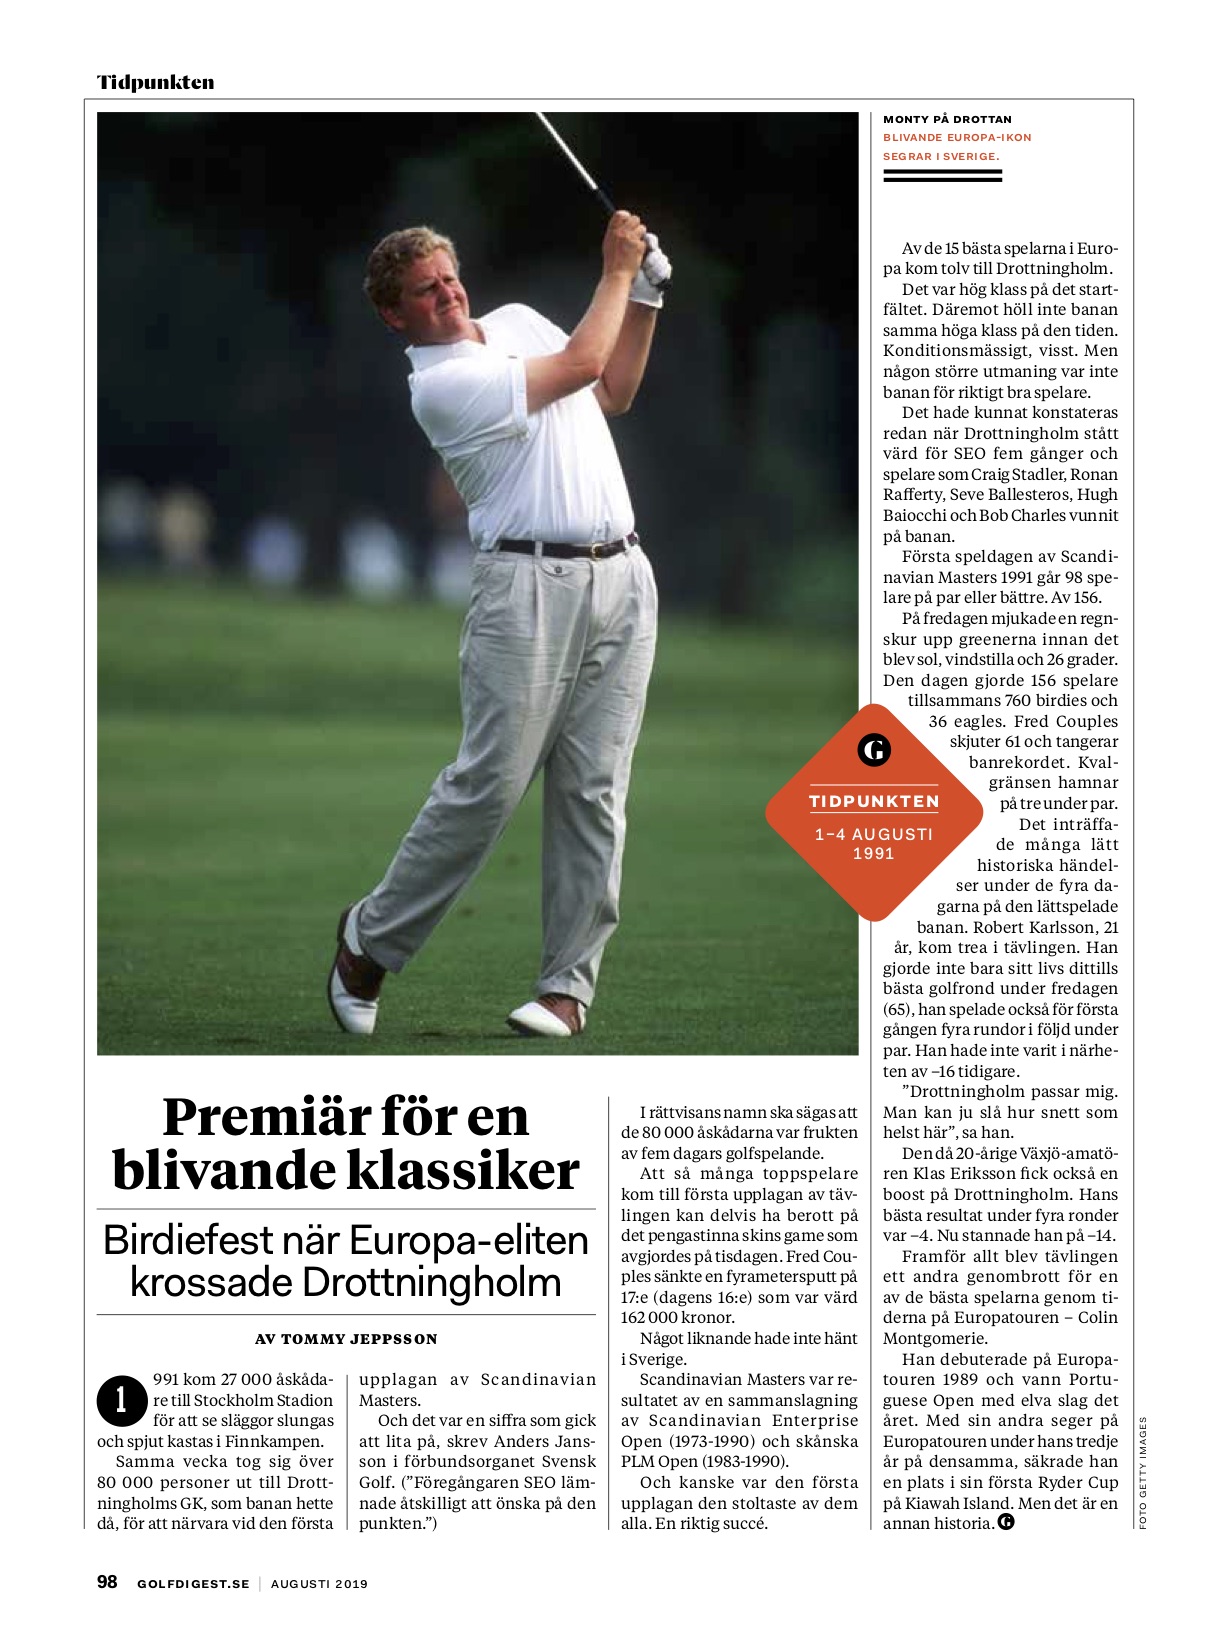 Birdiefest på Drottningholm – krönika om en klassisk golftävling för Golf Digest